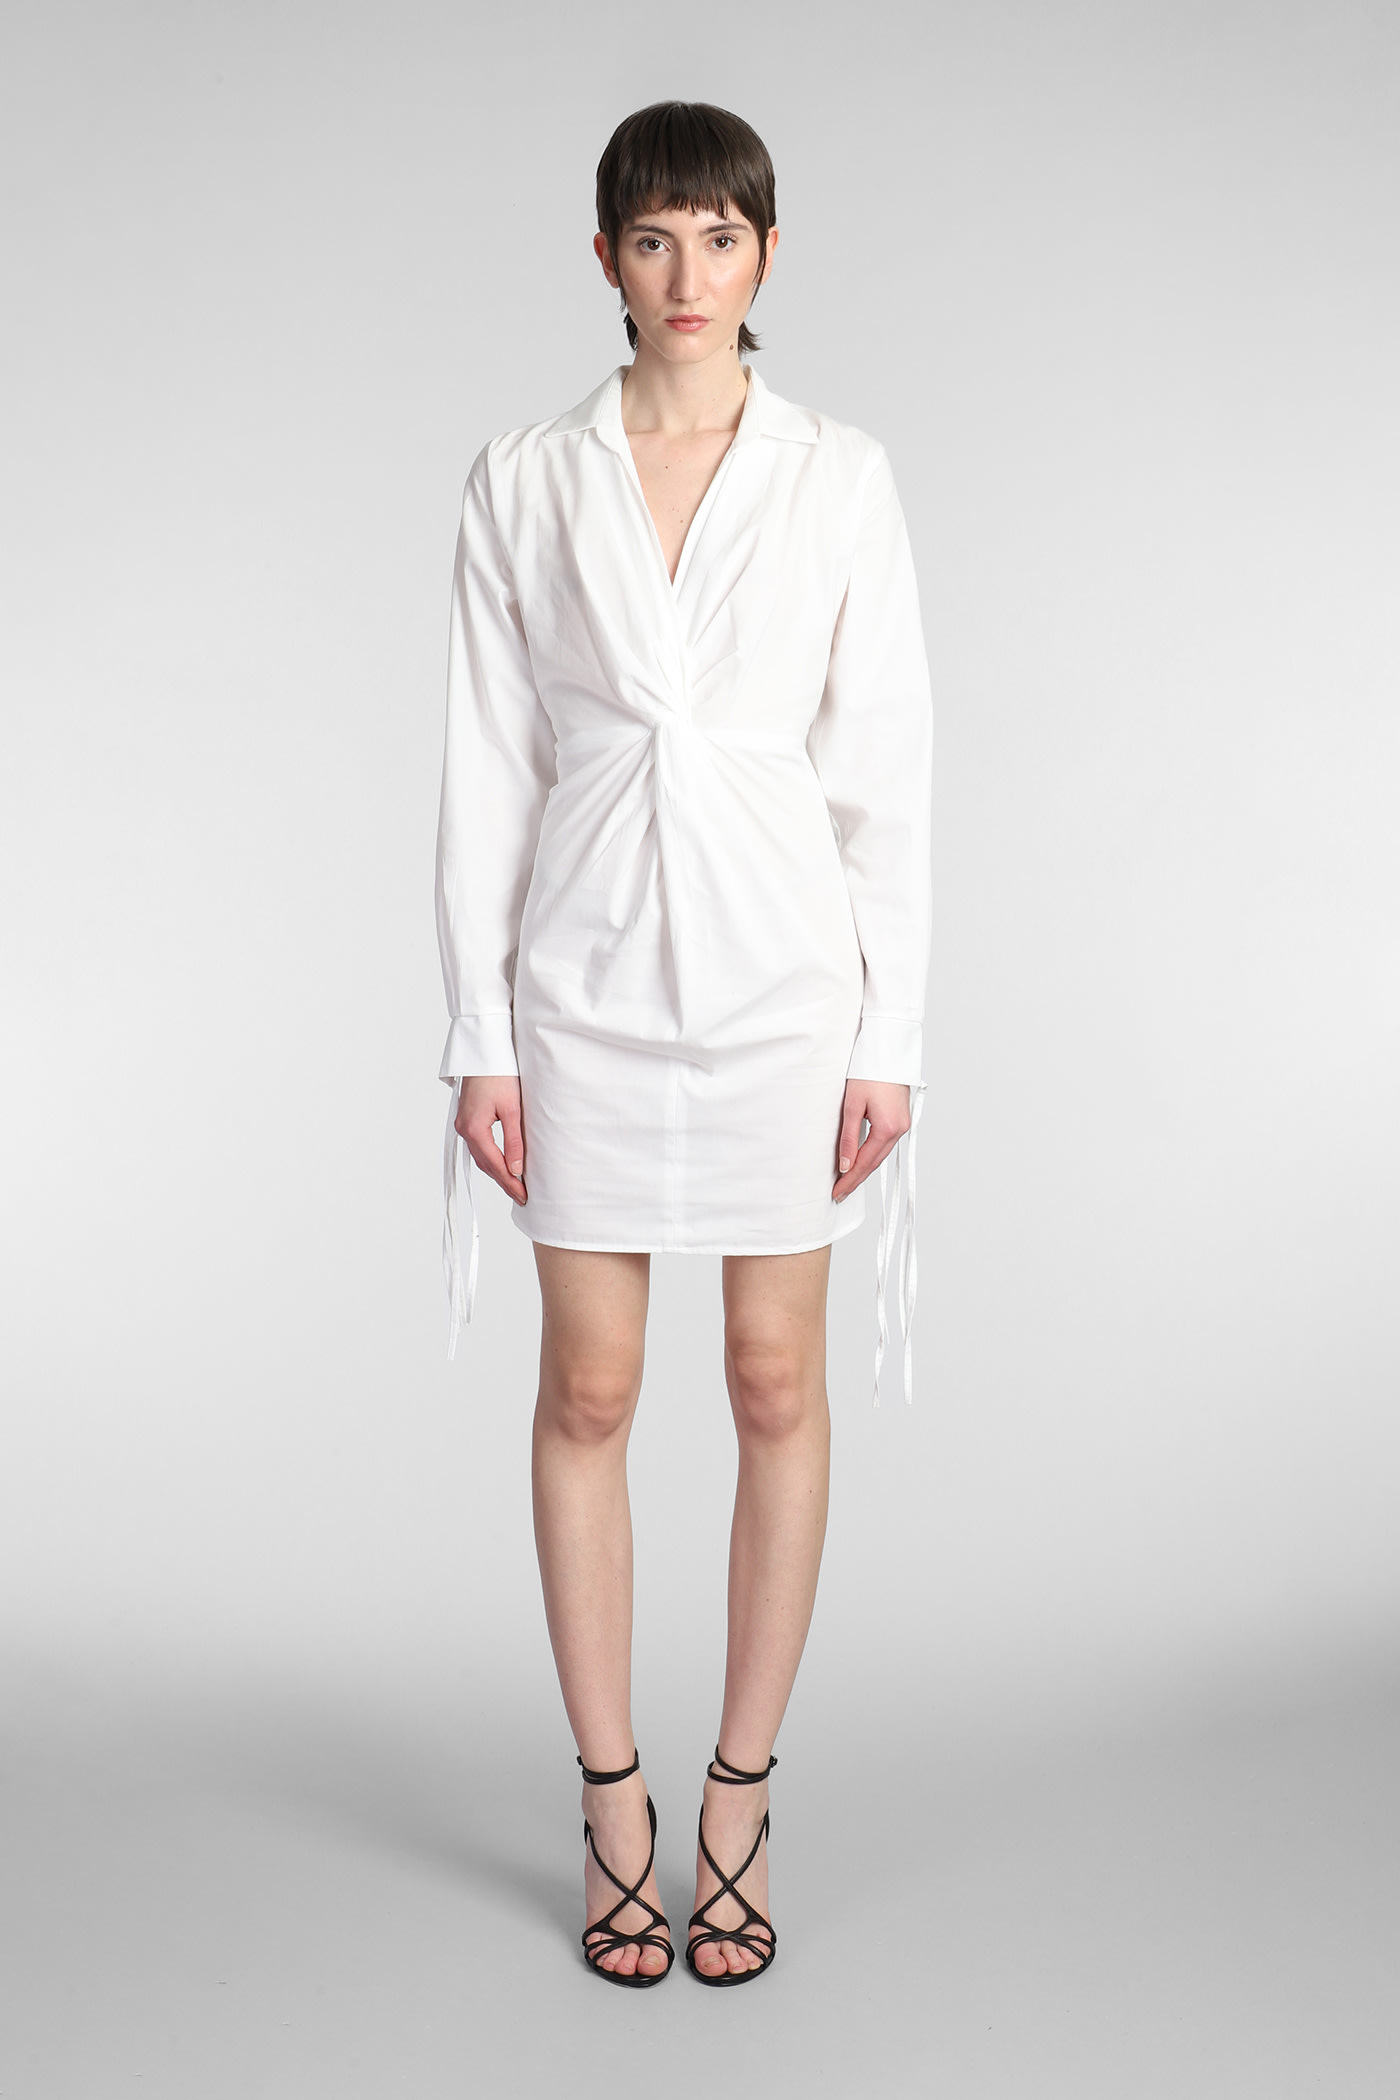 ANDREĀDAMO Dress In White Cotton